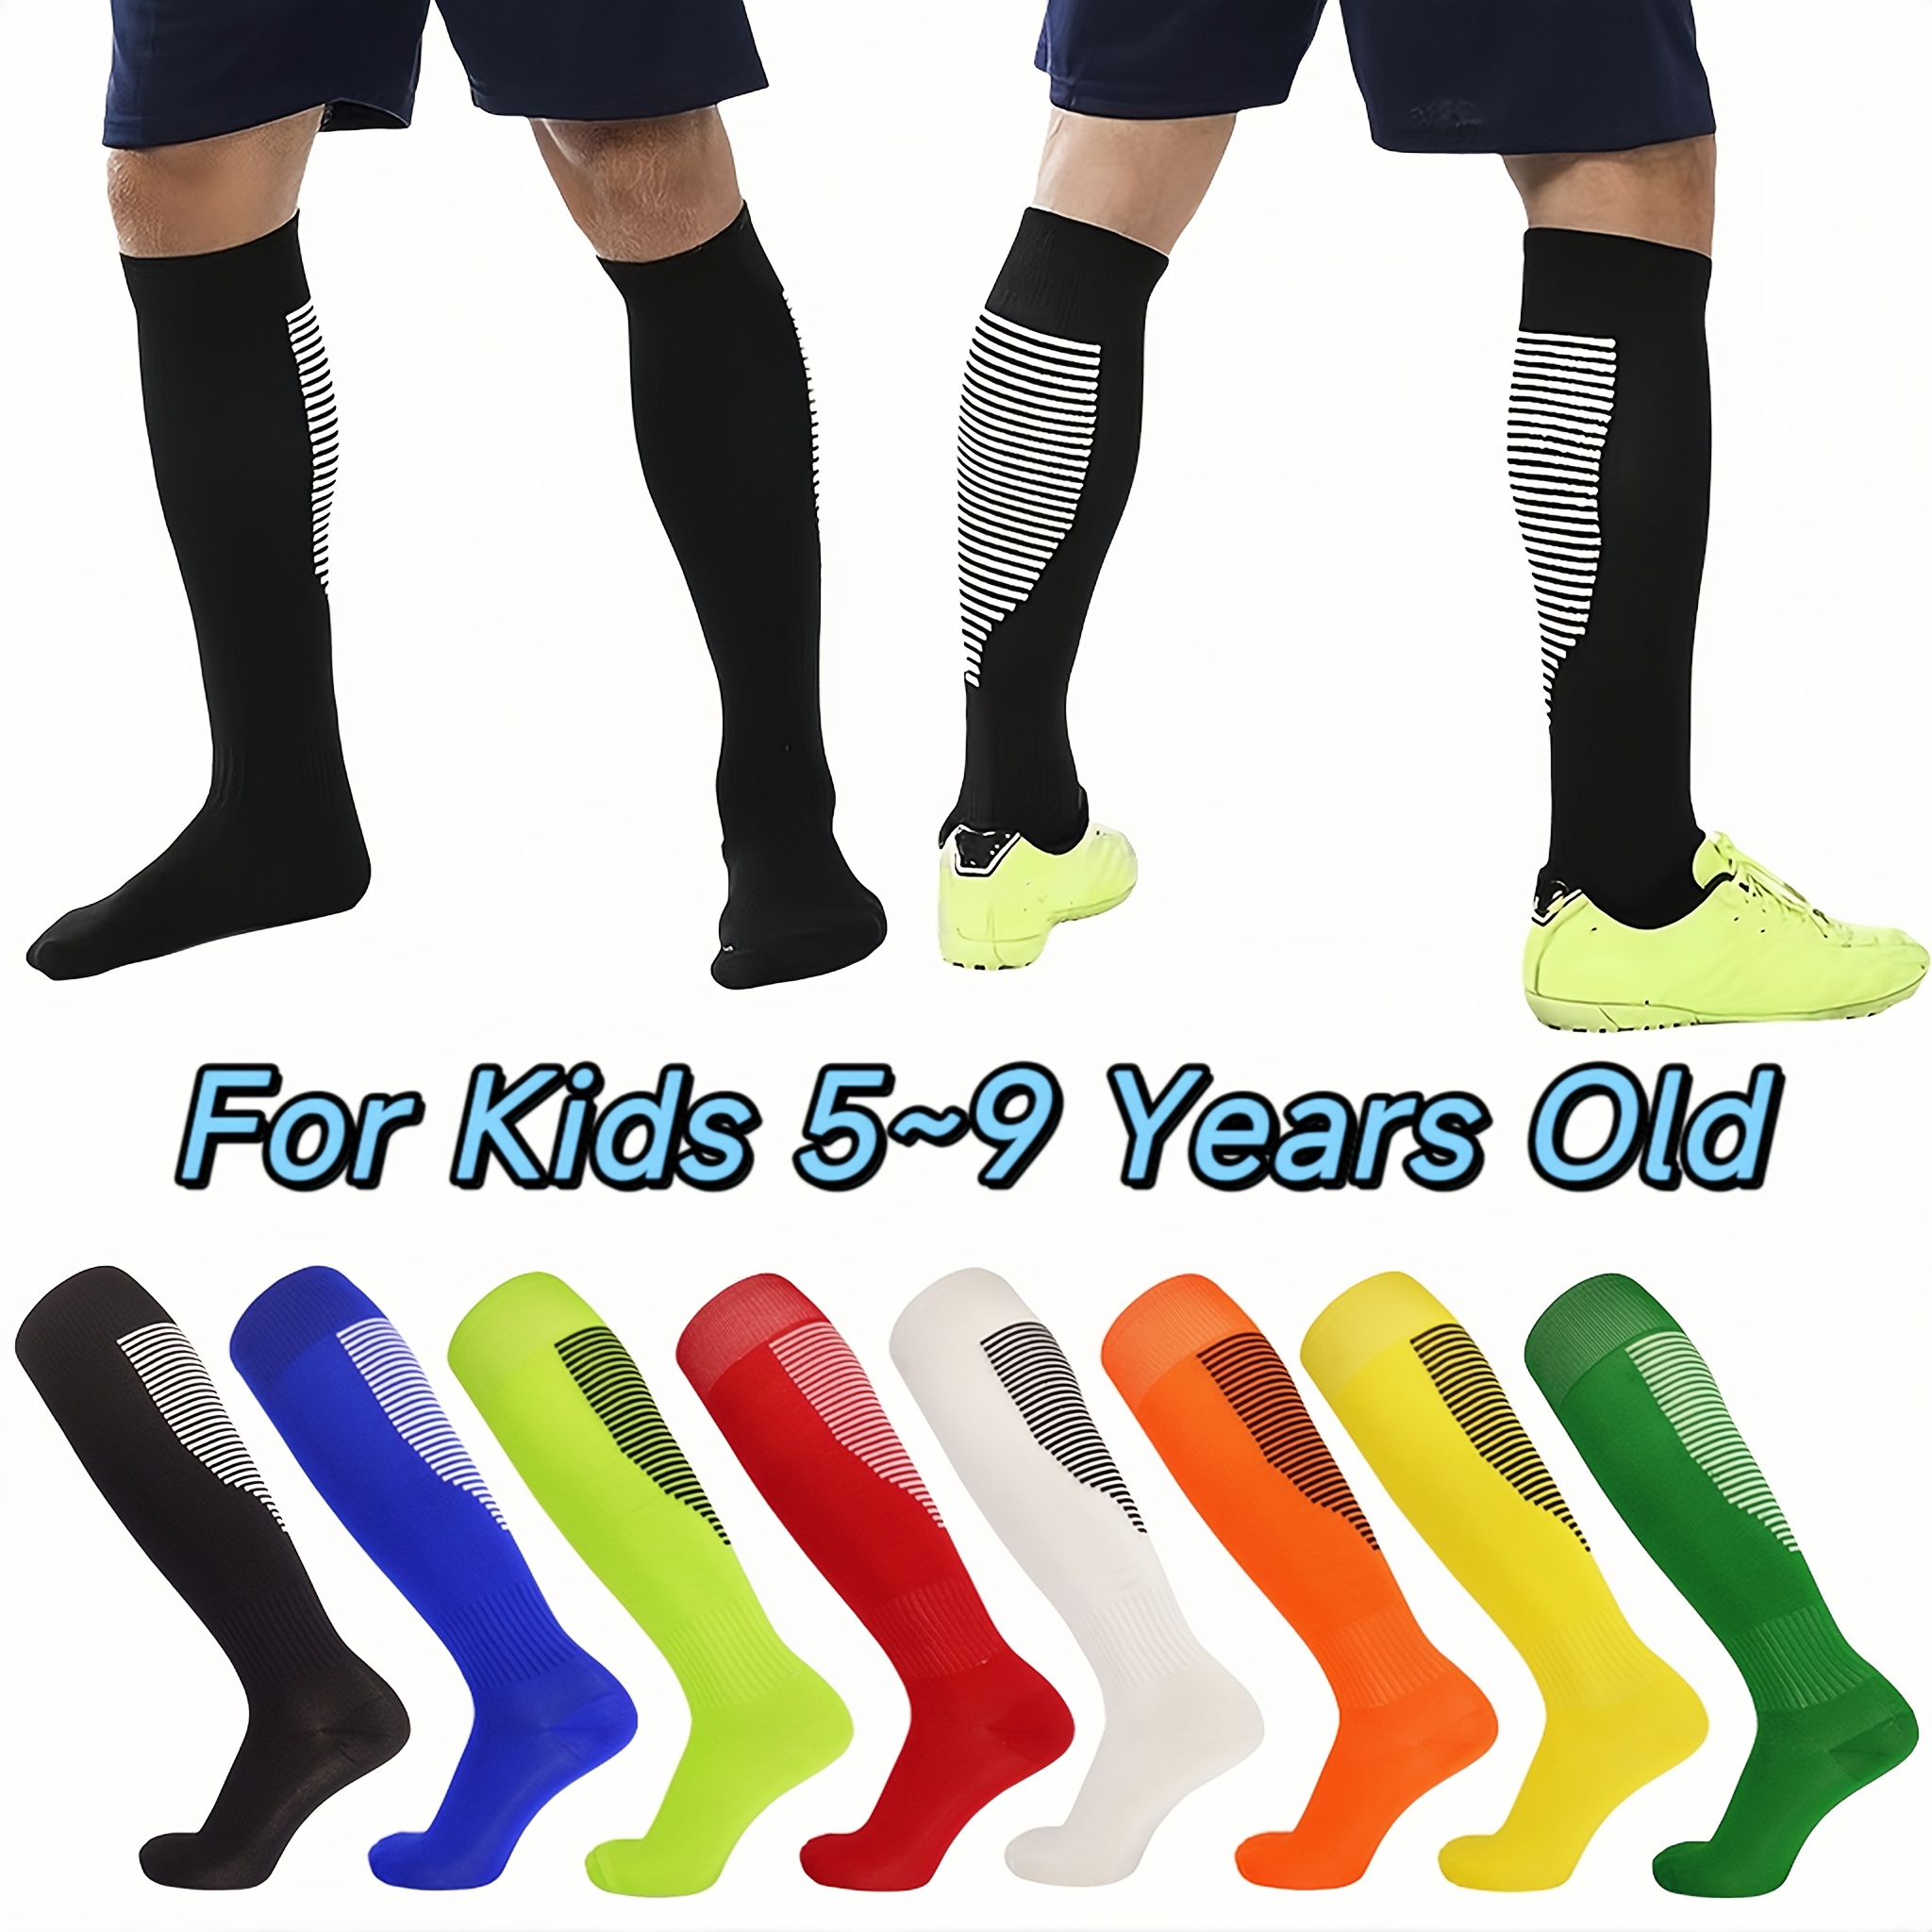 Ofertas en calcetines deportivos para niños